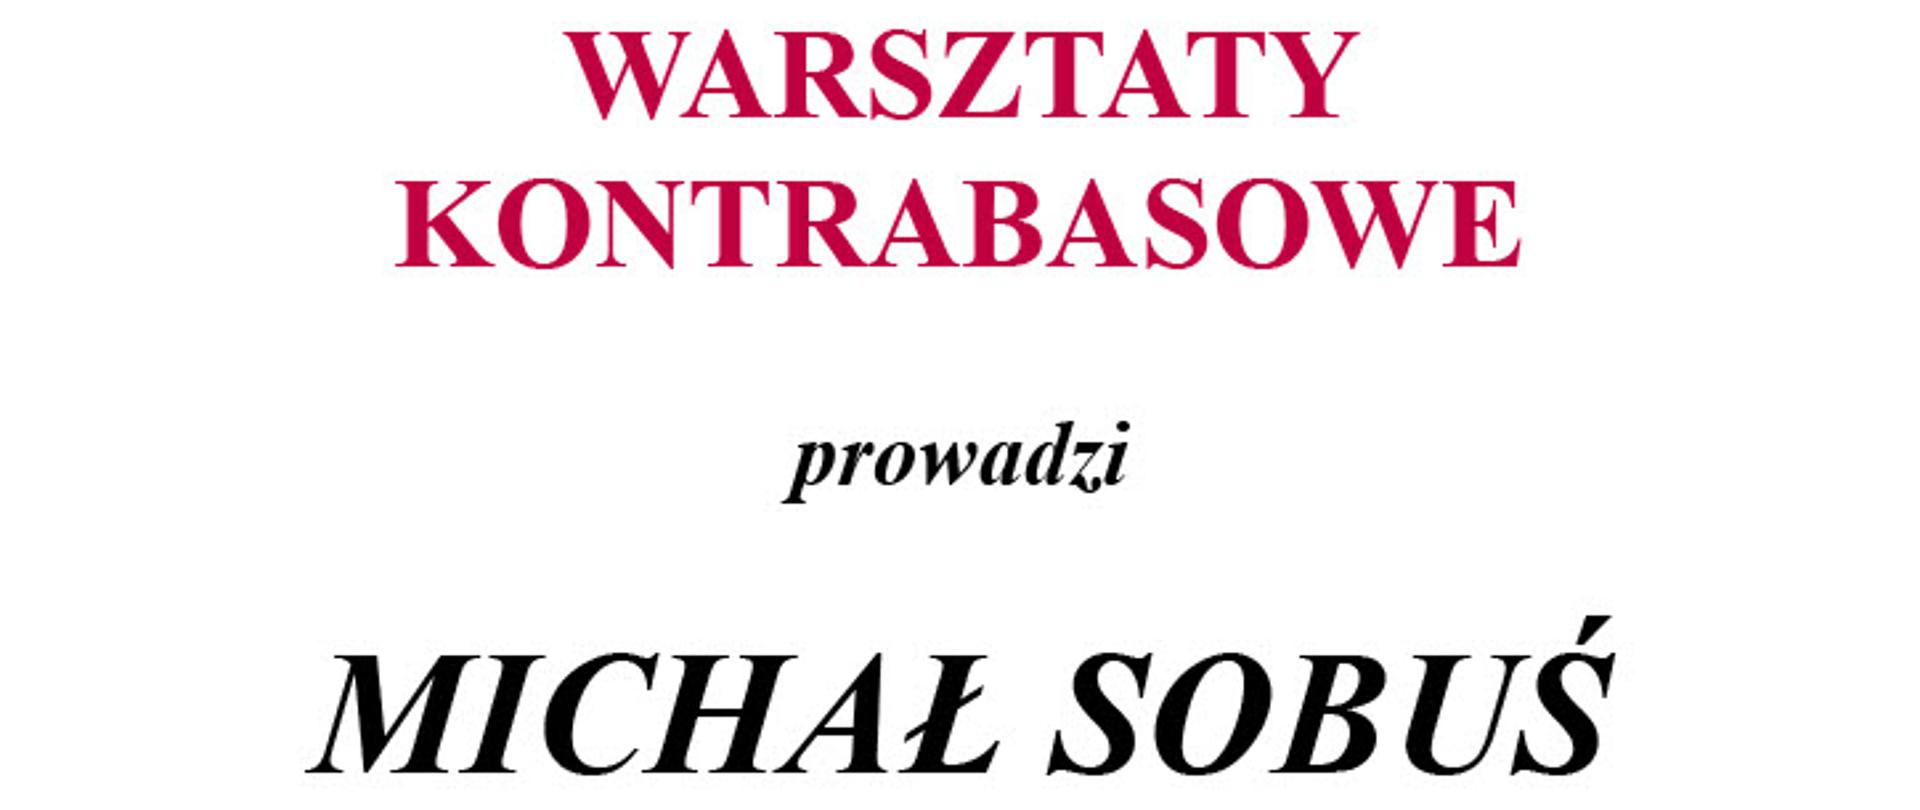 Plakat, białe tło, czerwony napis na górze "Warsztaty kontrabasowe" poniżej napis czarny "prowadzi Michał Sobuś - kontrabasista orkiestry Sinfonia Varsovia"